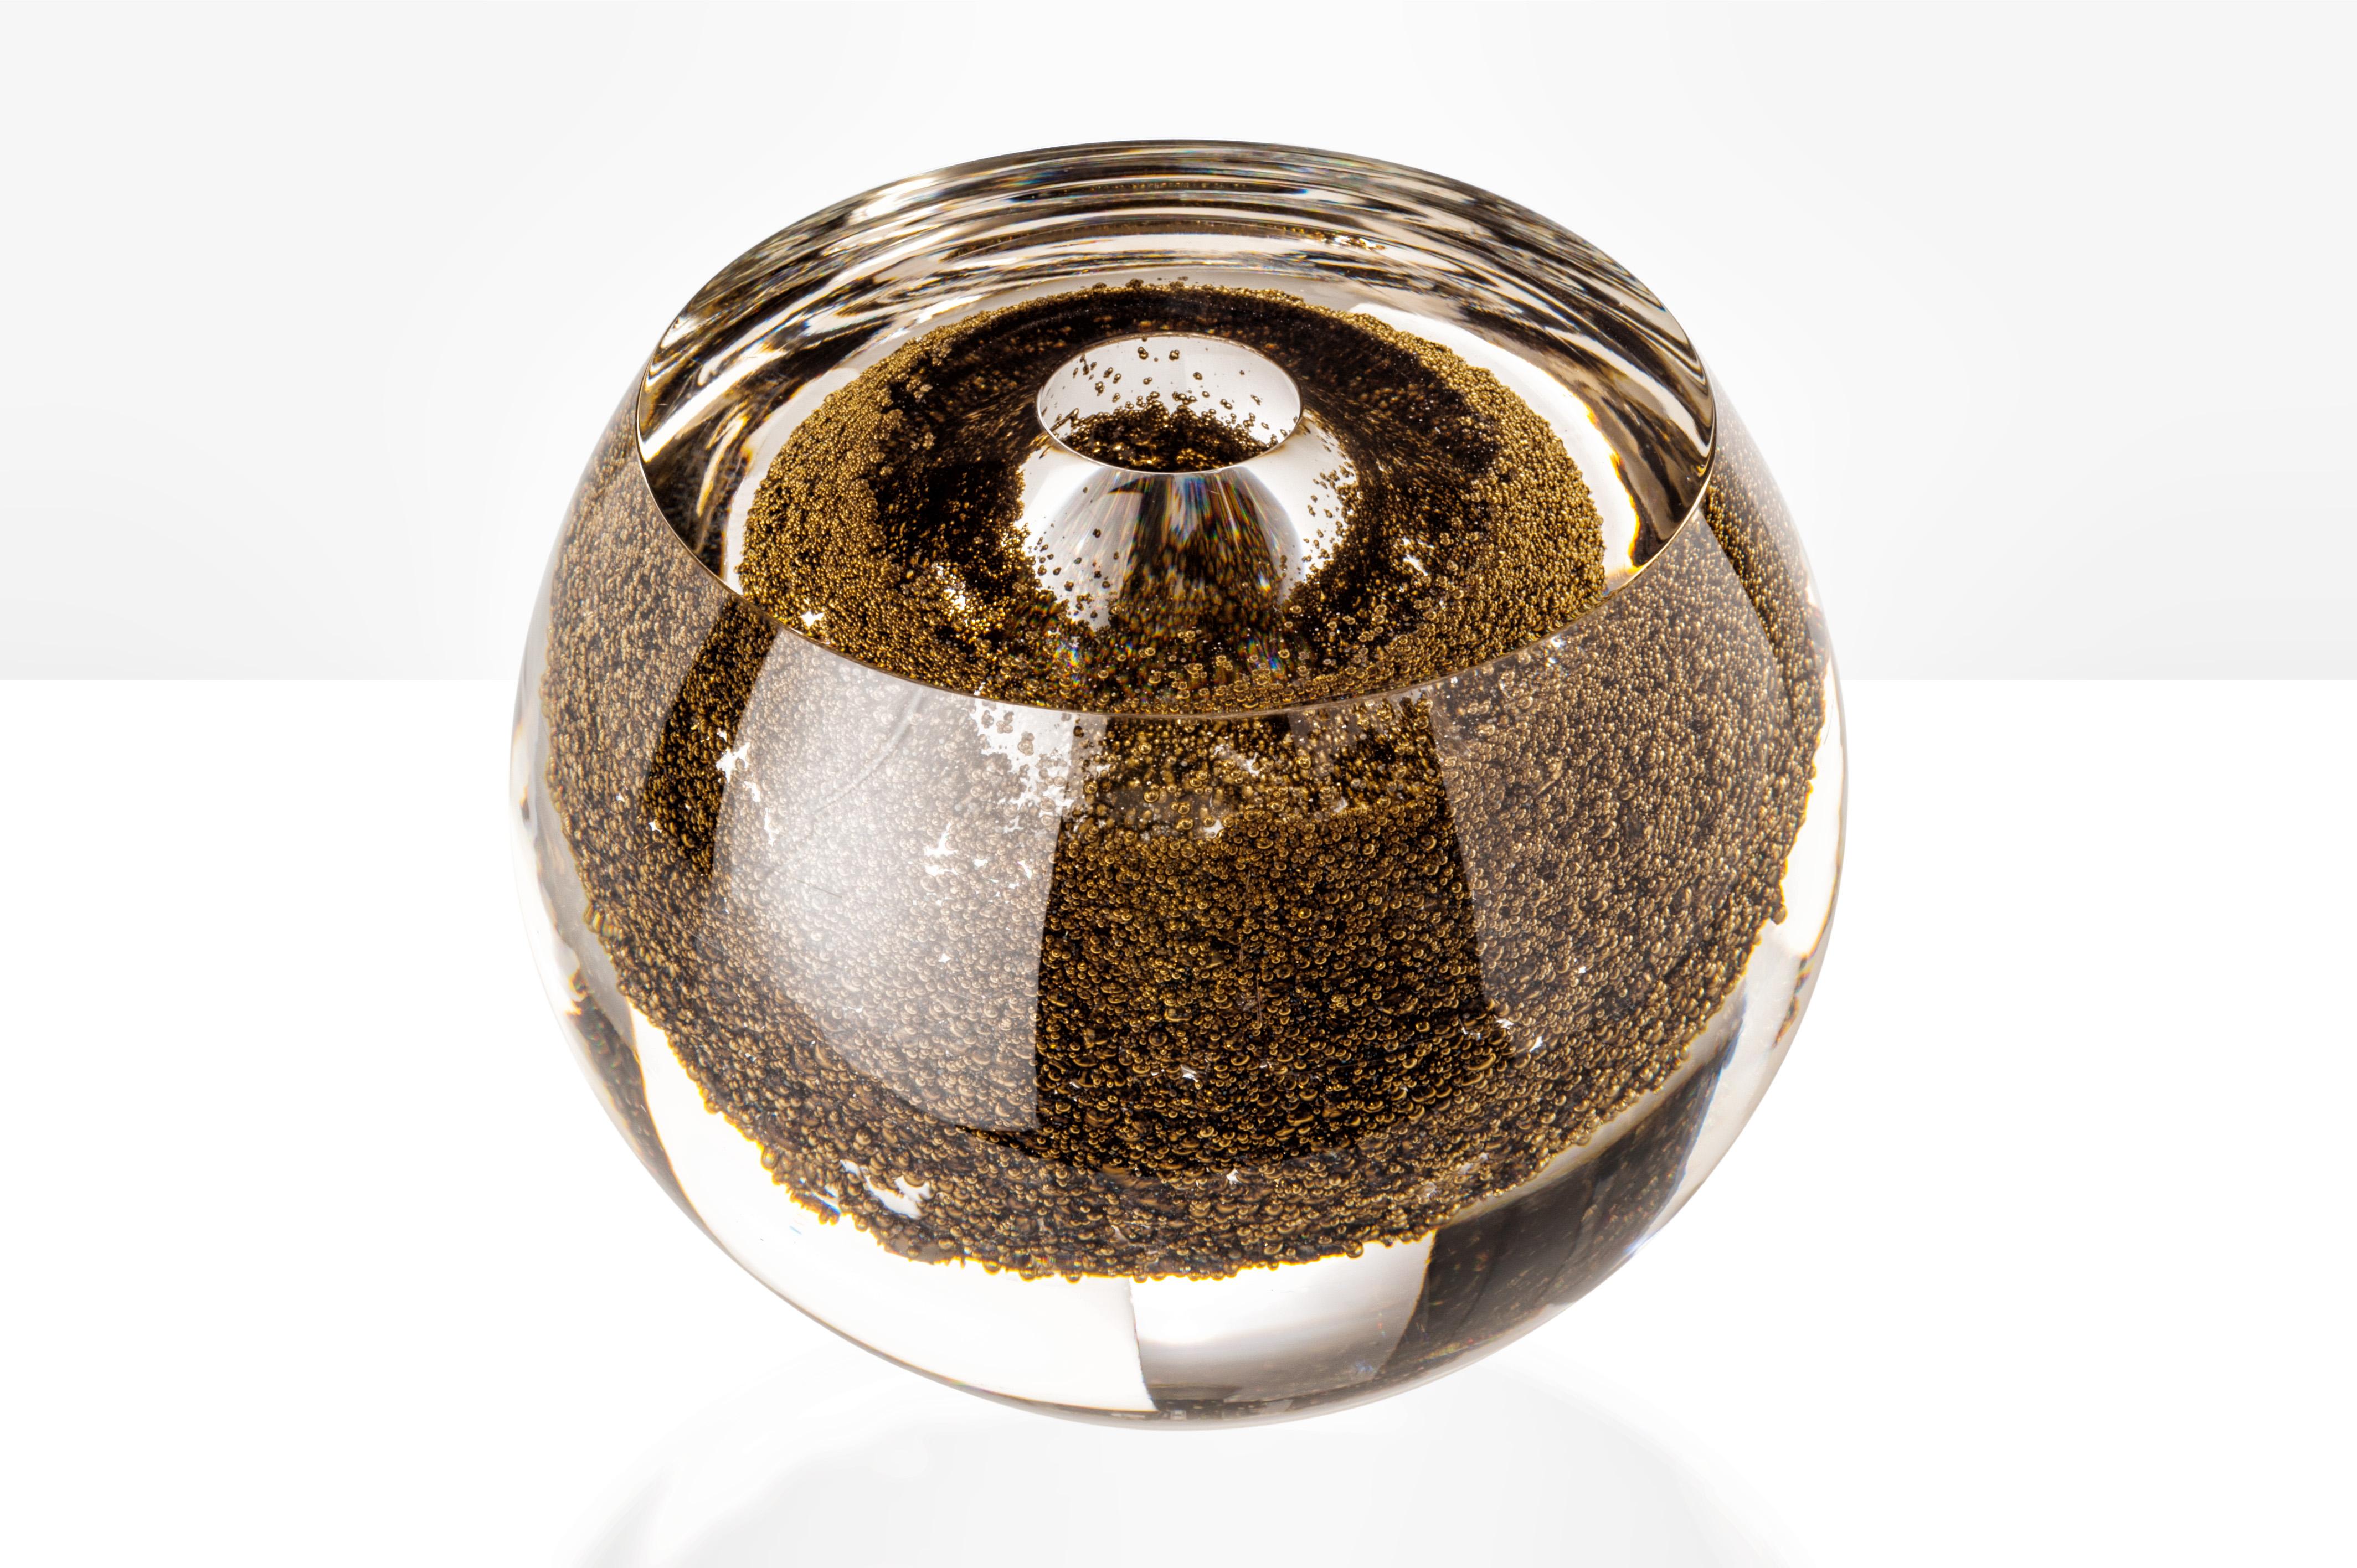 Palpito Le bol et le vase en verre, conçus et fabriqués par Venini, présentent un corps en cristal avec une décoration en métal. Edition limitée à 49 pièces d'art (par version). Utilisation intérieure uniquement.

Dimensions : Ø 25 cm, H 19 cm.